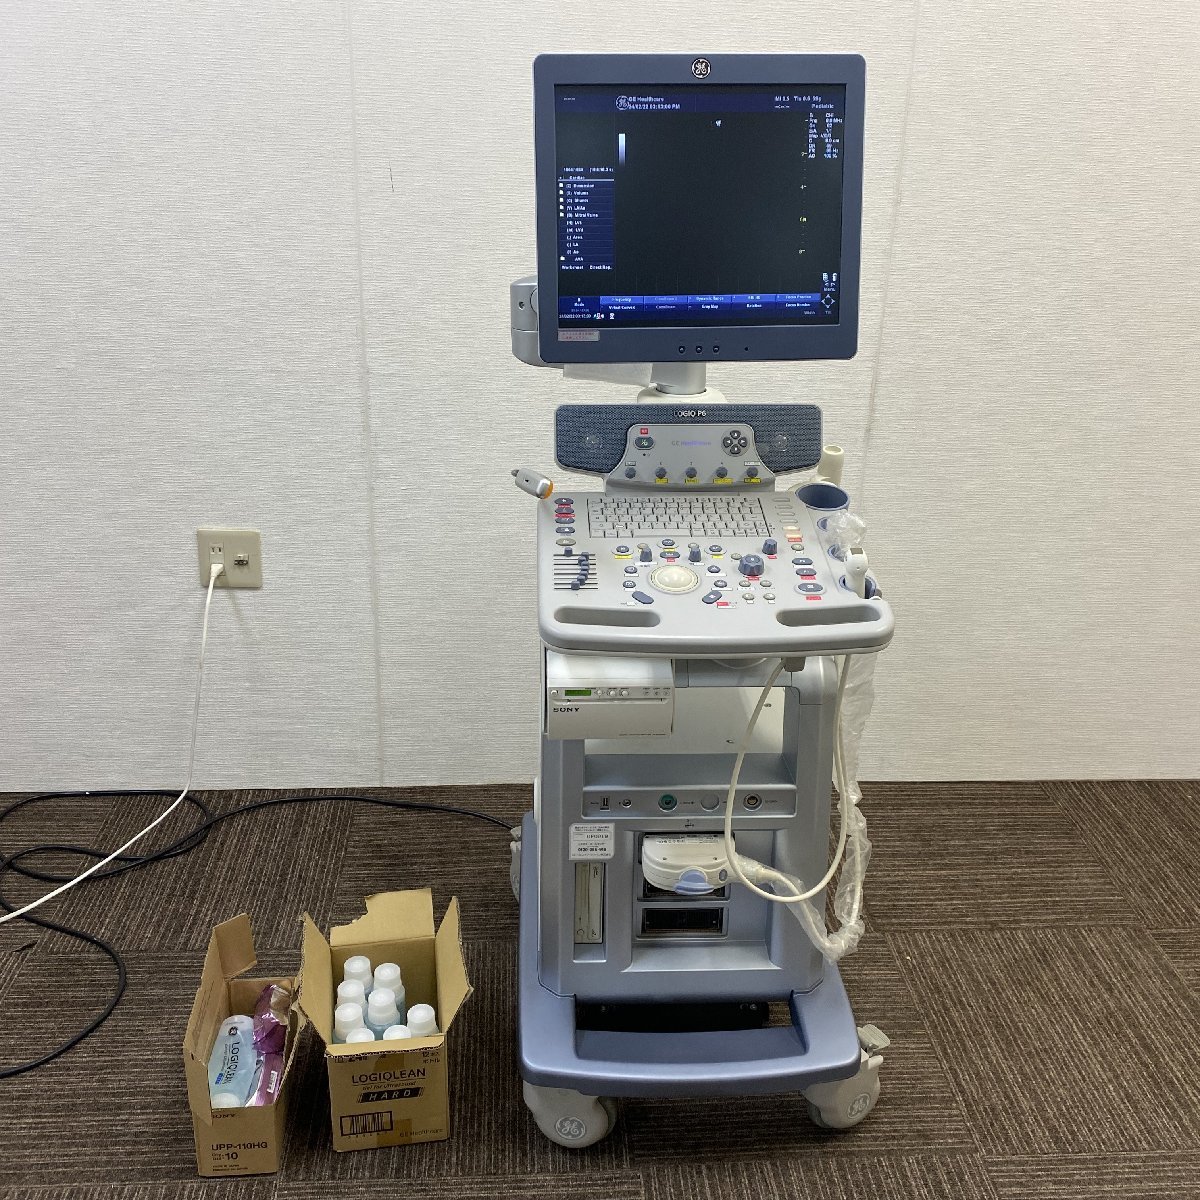 【中古】GEヘルスケア 汎用超音波診断装置 LOGIQ P6 GE HealthCare 超音波画像診断装置_画像1